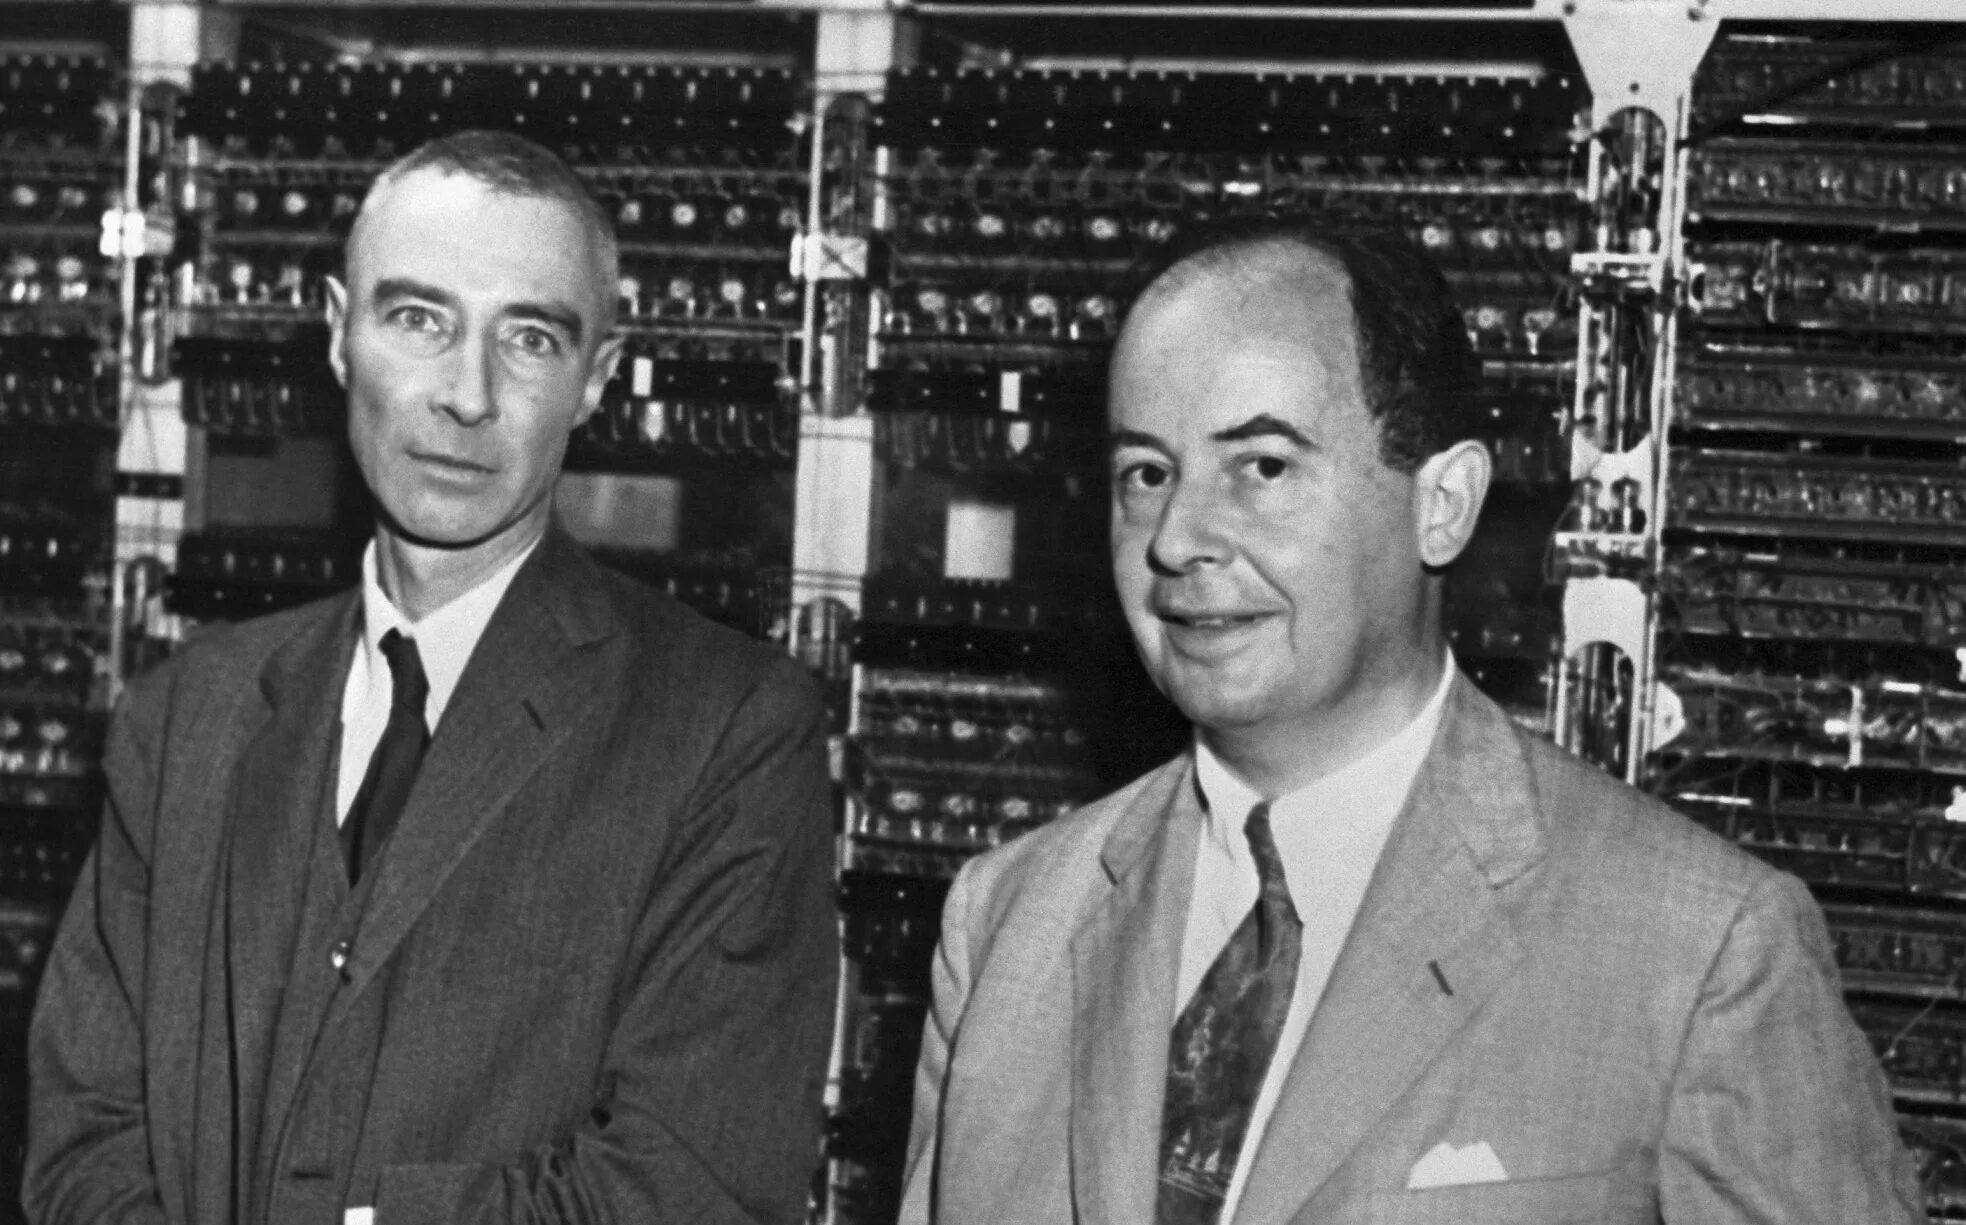 Дж нейман. Джон Нейман. Дж фон Нейман. Джон фон Нейман «1903-1957 гг.». Джон фон Не́йман.